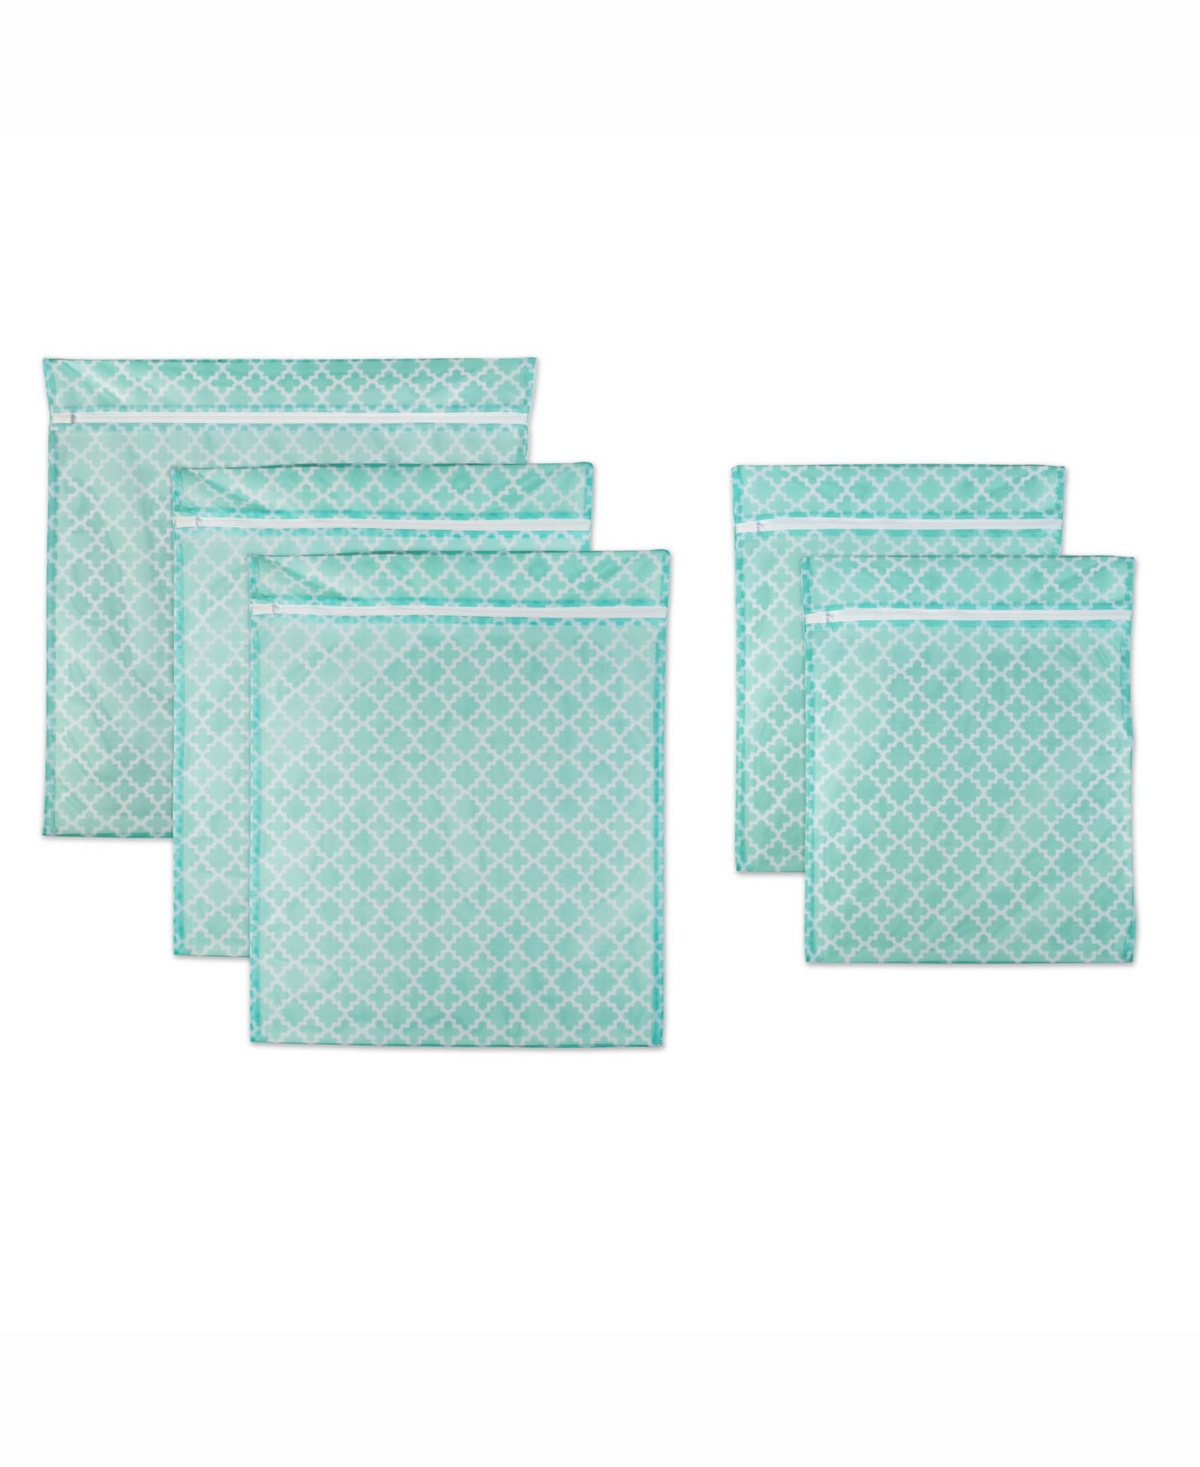 Design Import Lattice Set G Mesh Laundry Bag, Set of 5 - Turquoise